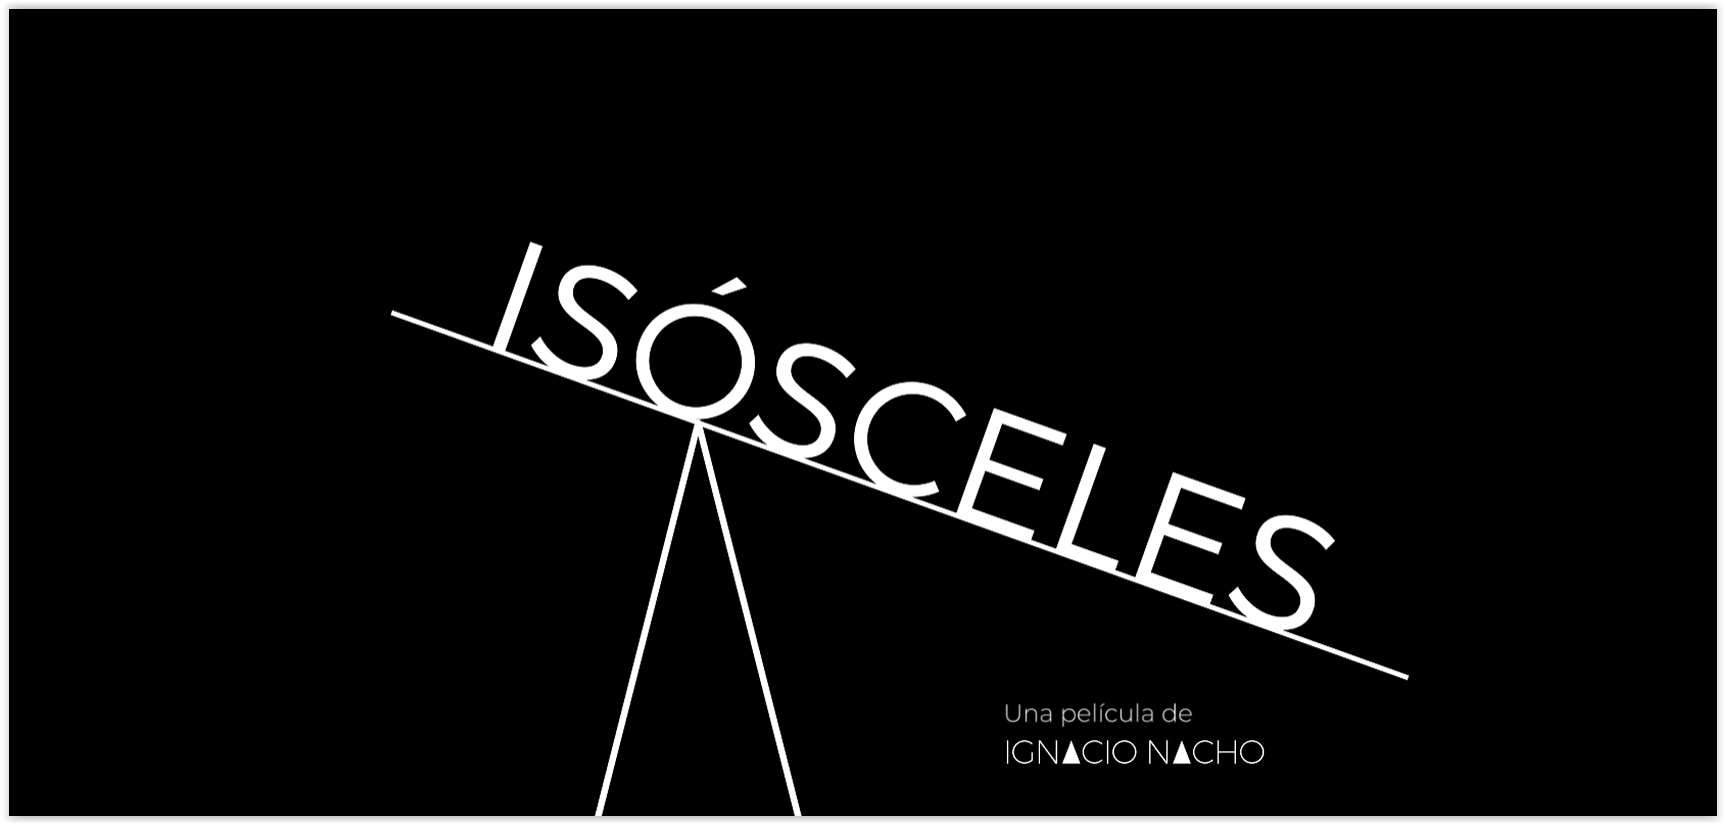 isosceles